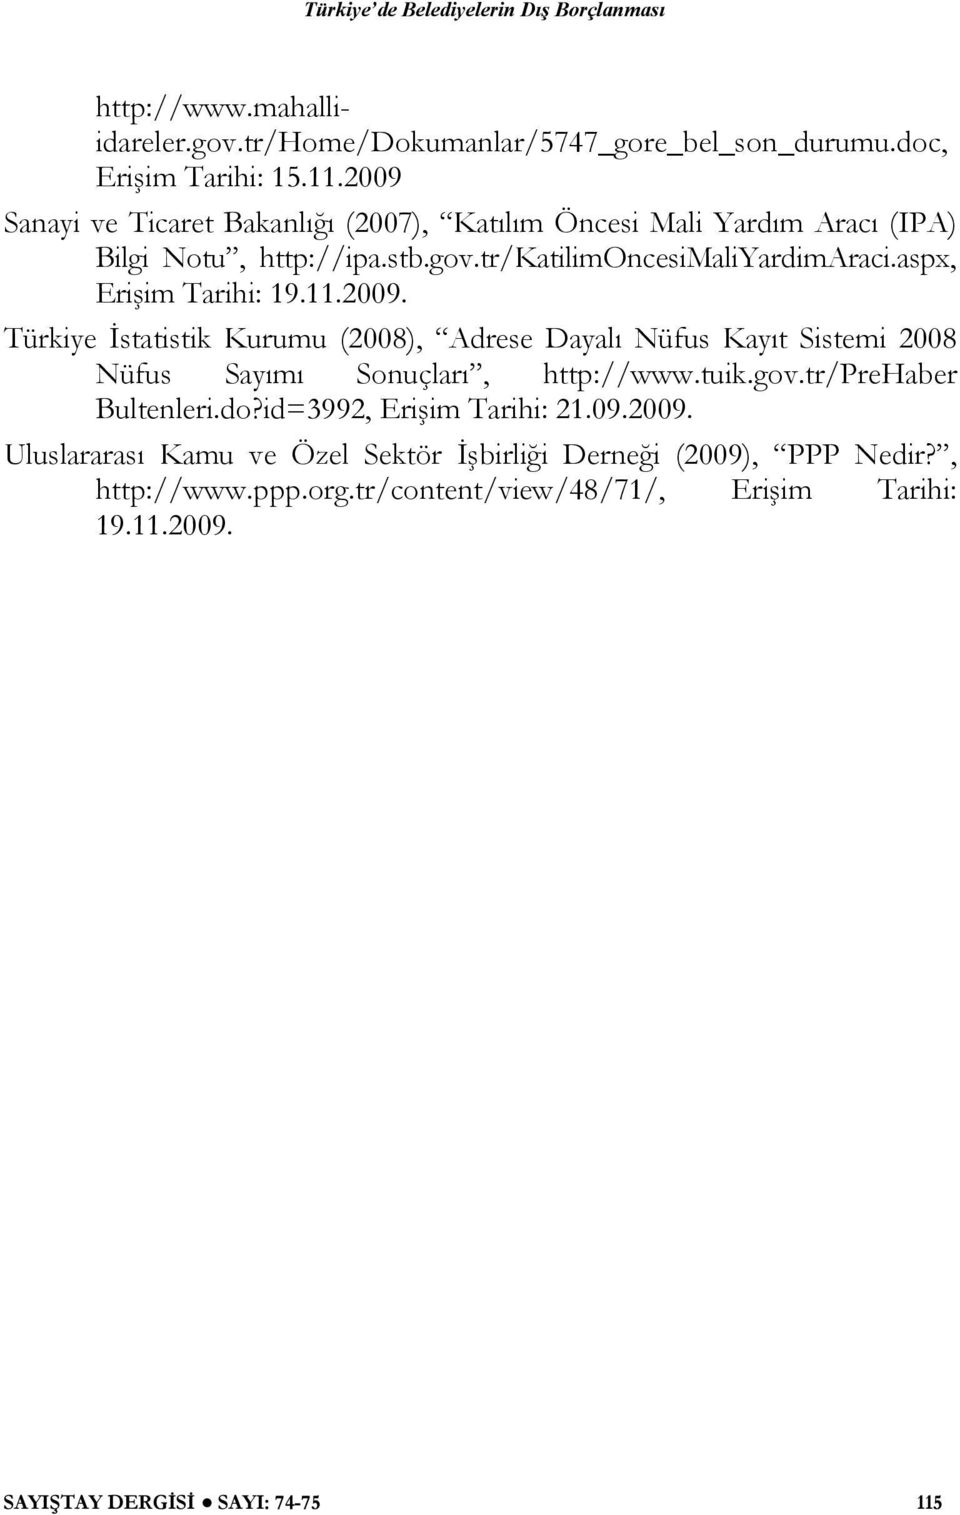 aspx, Erişim Tarihi: 19.11.2009. Türkiye İstatistik Kurumu (2008), Adrese Dayalı Nüfus Kayıt Sistemi 2008 Nüfus Sayımı Sonuçları, http://www.tuik.gov.